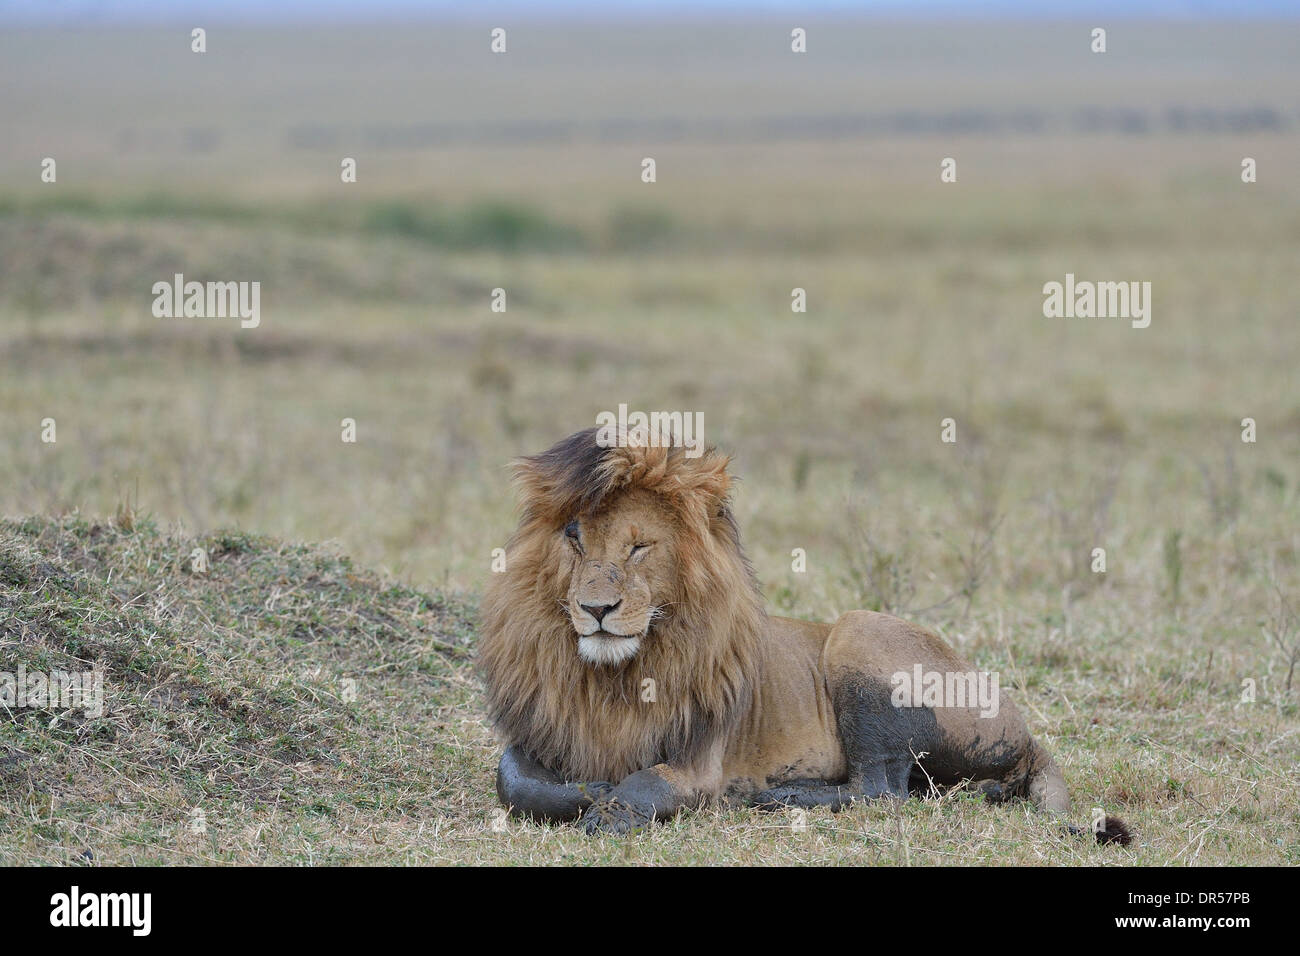 East African Lion - Masai lion (Panthera leo nubica) mâle (Scarface) couché dans la savane Masai Mara - Kenya - Afrique de l'Est Banque D'Images